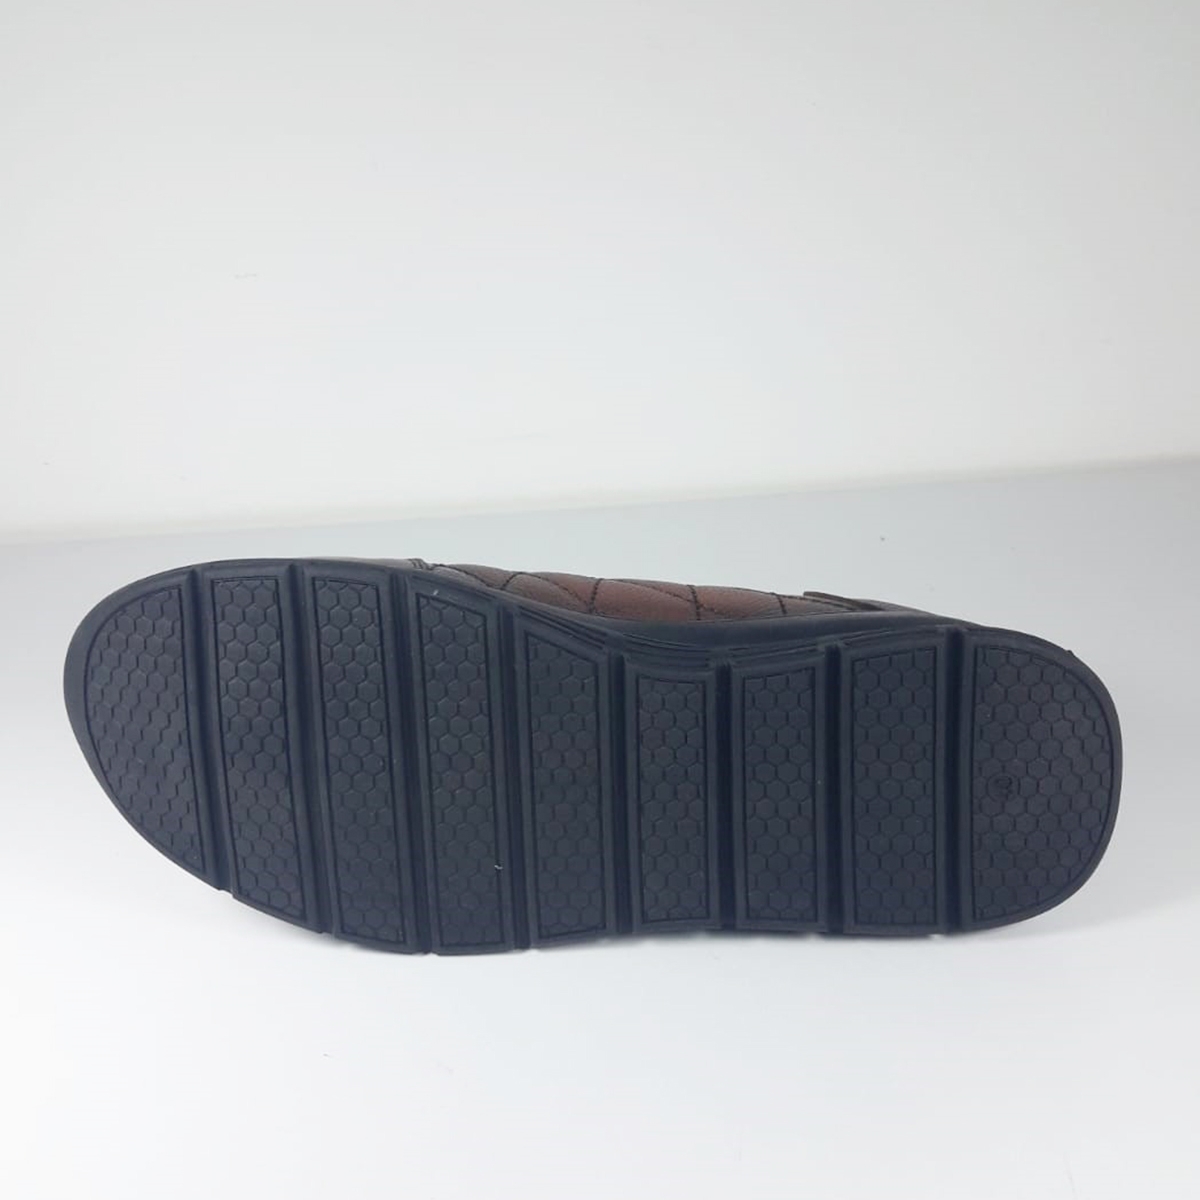 Flo Dropland 8330 Comfort Taban Erkek Deri Günlük-Klasik Ayakkabı TABA. 5